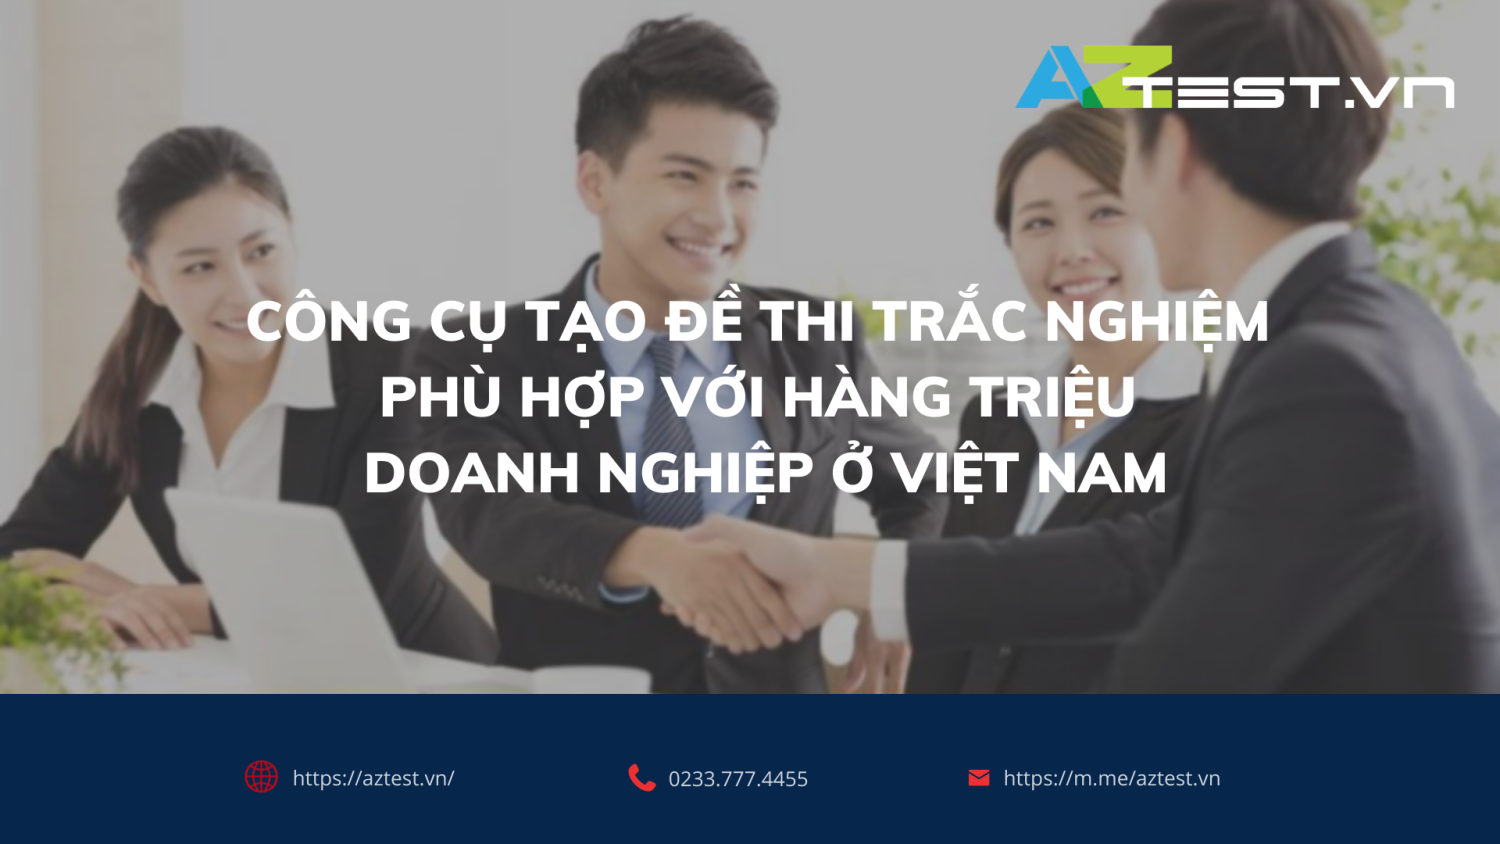 Công cụ tạo đề thi trắc nghiệm phù hợp với hàng triệu doanh nghiệp ở Việt Nam